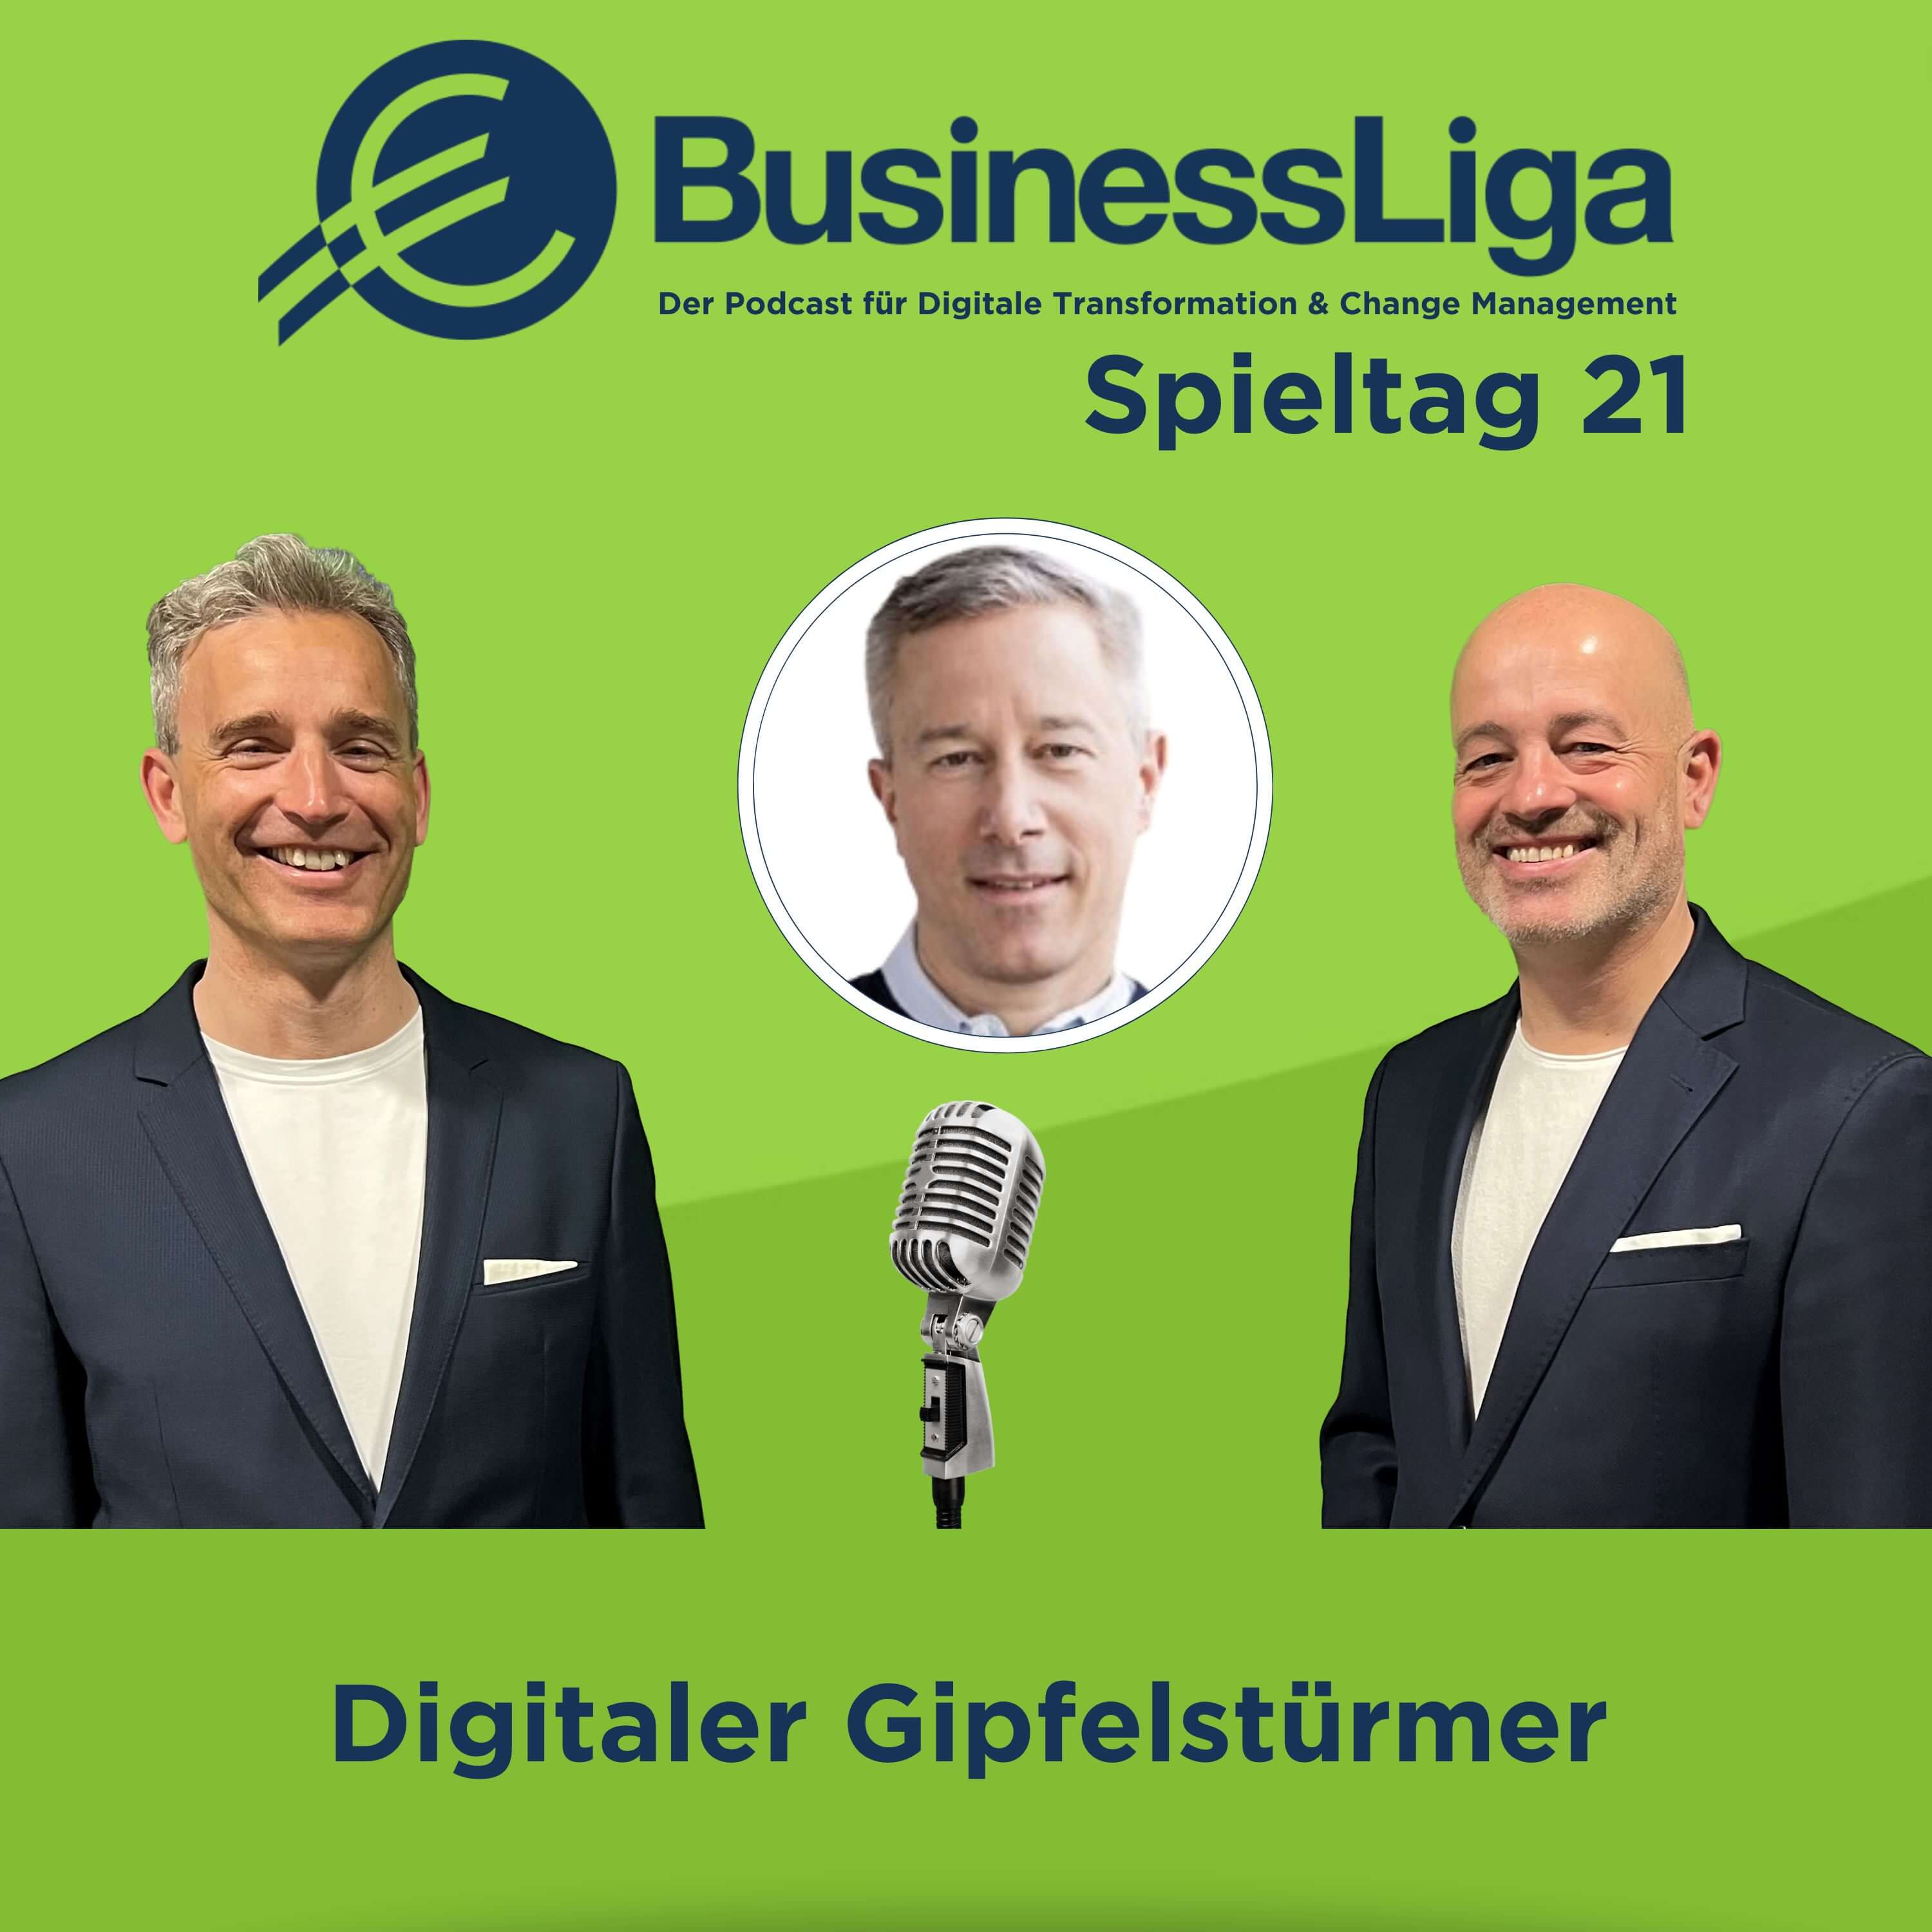 Spieltag 21: "Digitaler Gipfelstürmer" mit Tobias Zierau.